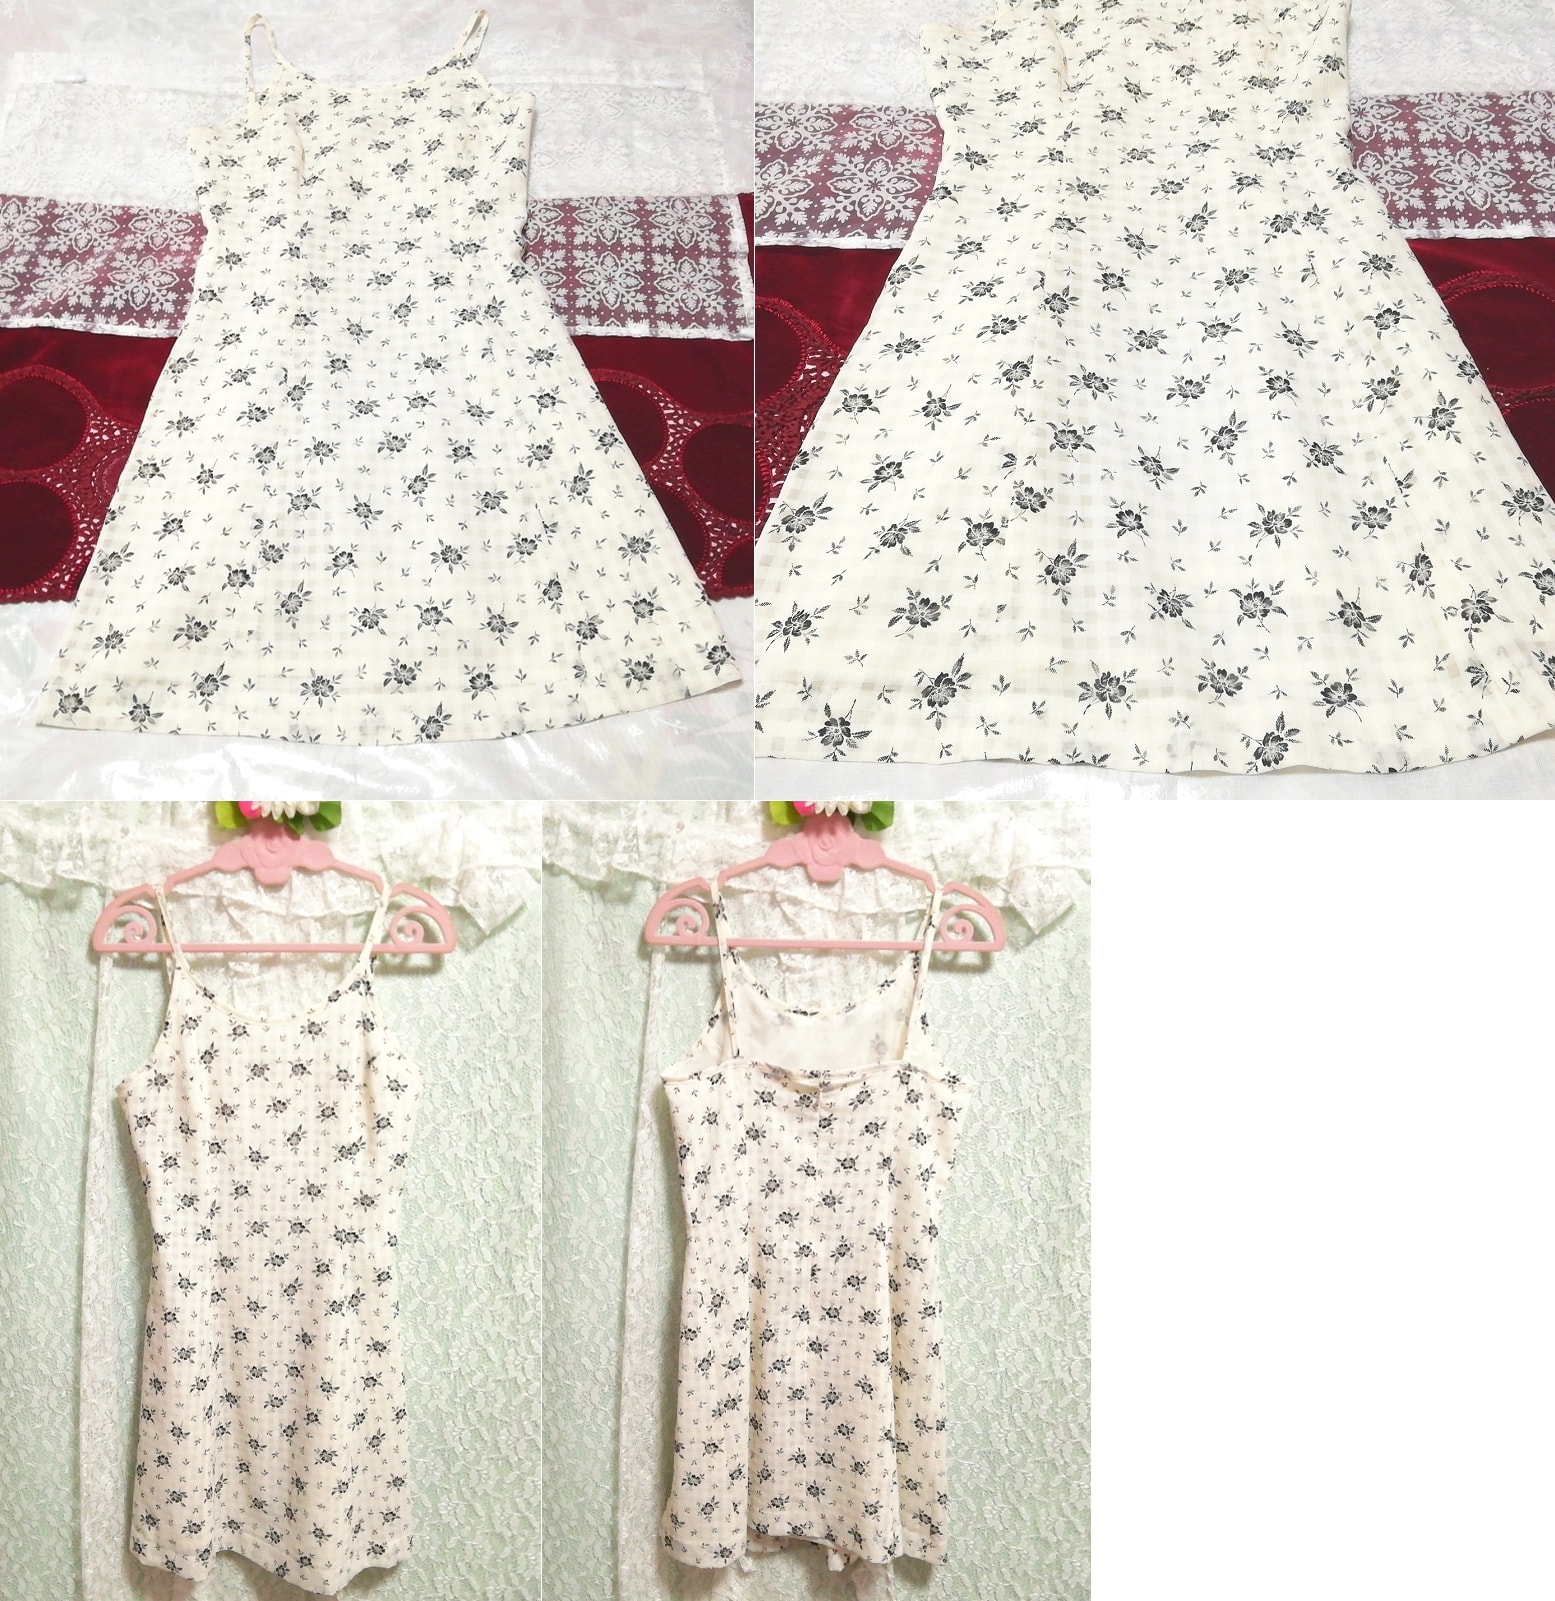 Schwarz-weißes Negligé-Nachthemd mit Blumenmuster und Babydoll-Nachtwäsche, Mode, Frauenmode, Leibchen